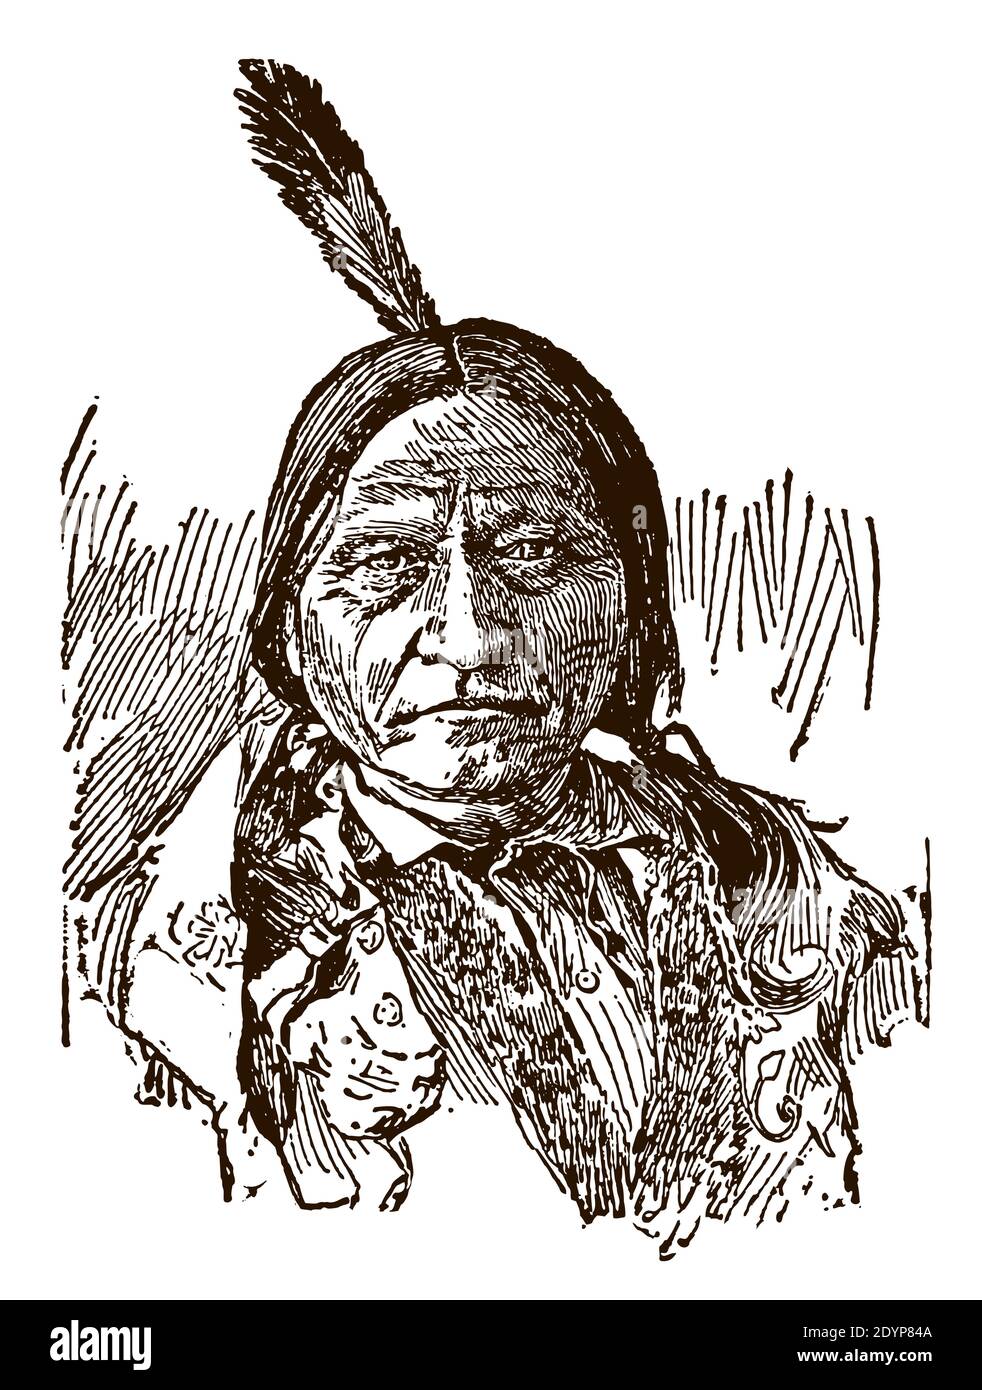 Portrait de la séance historique du chef Sioux autochtone Hunkpapa Lakota Bull en vue frontale Illustration de Vecteur